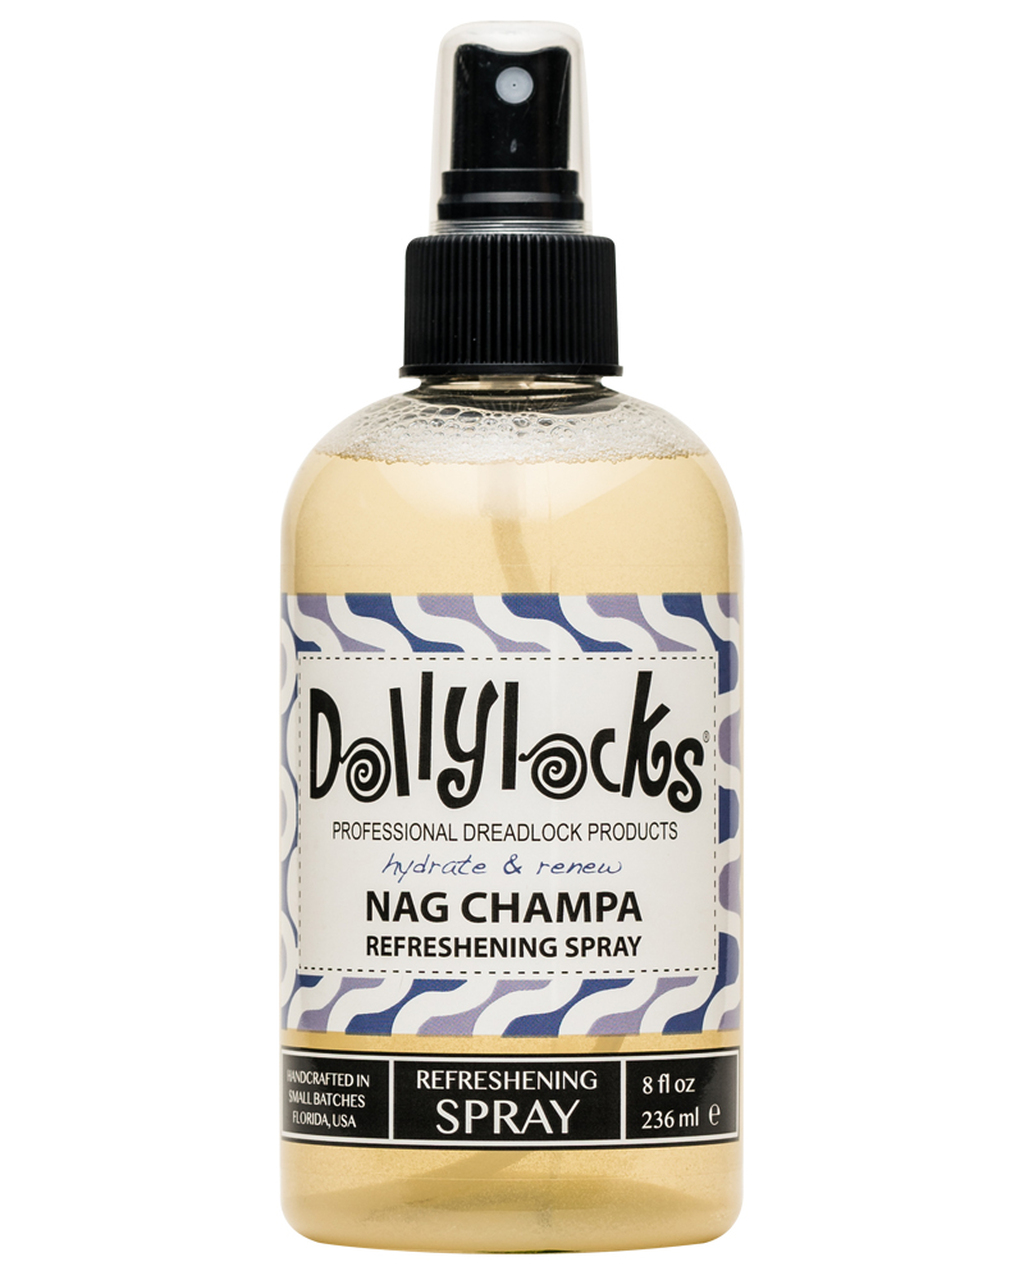 Dollylocks refreshing spray